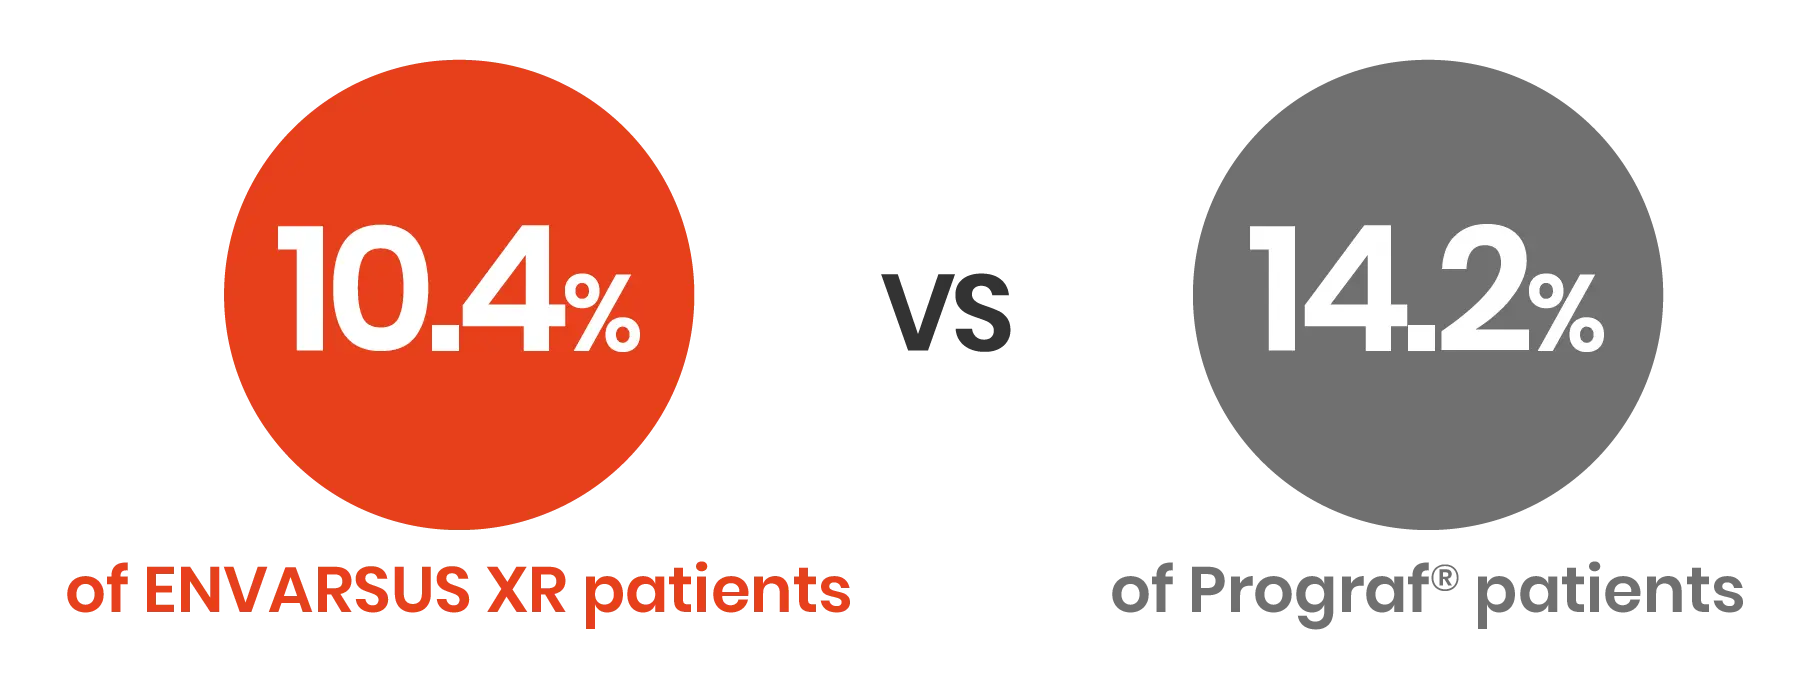 10.4% of ENVARSUS XR patients vs 14.2% of Prograf® patients